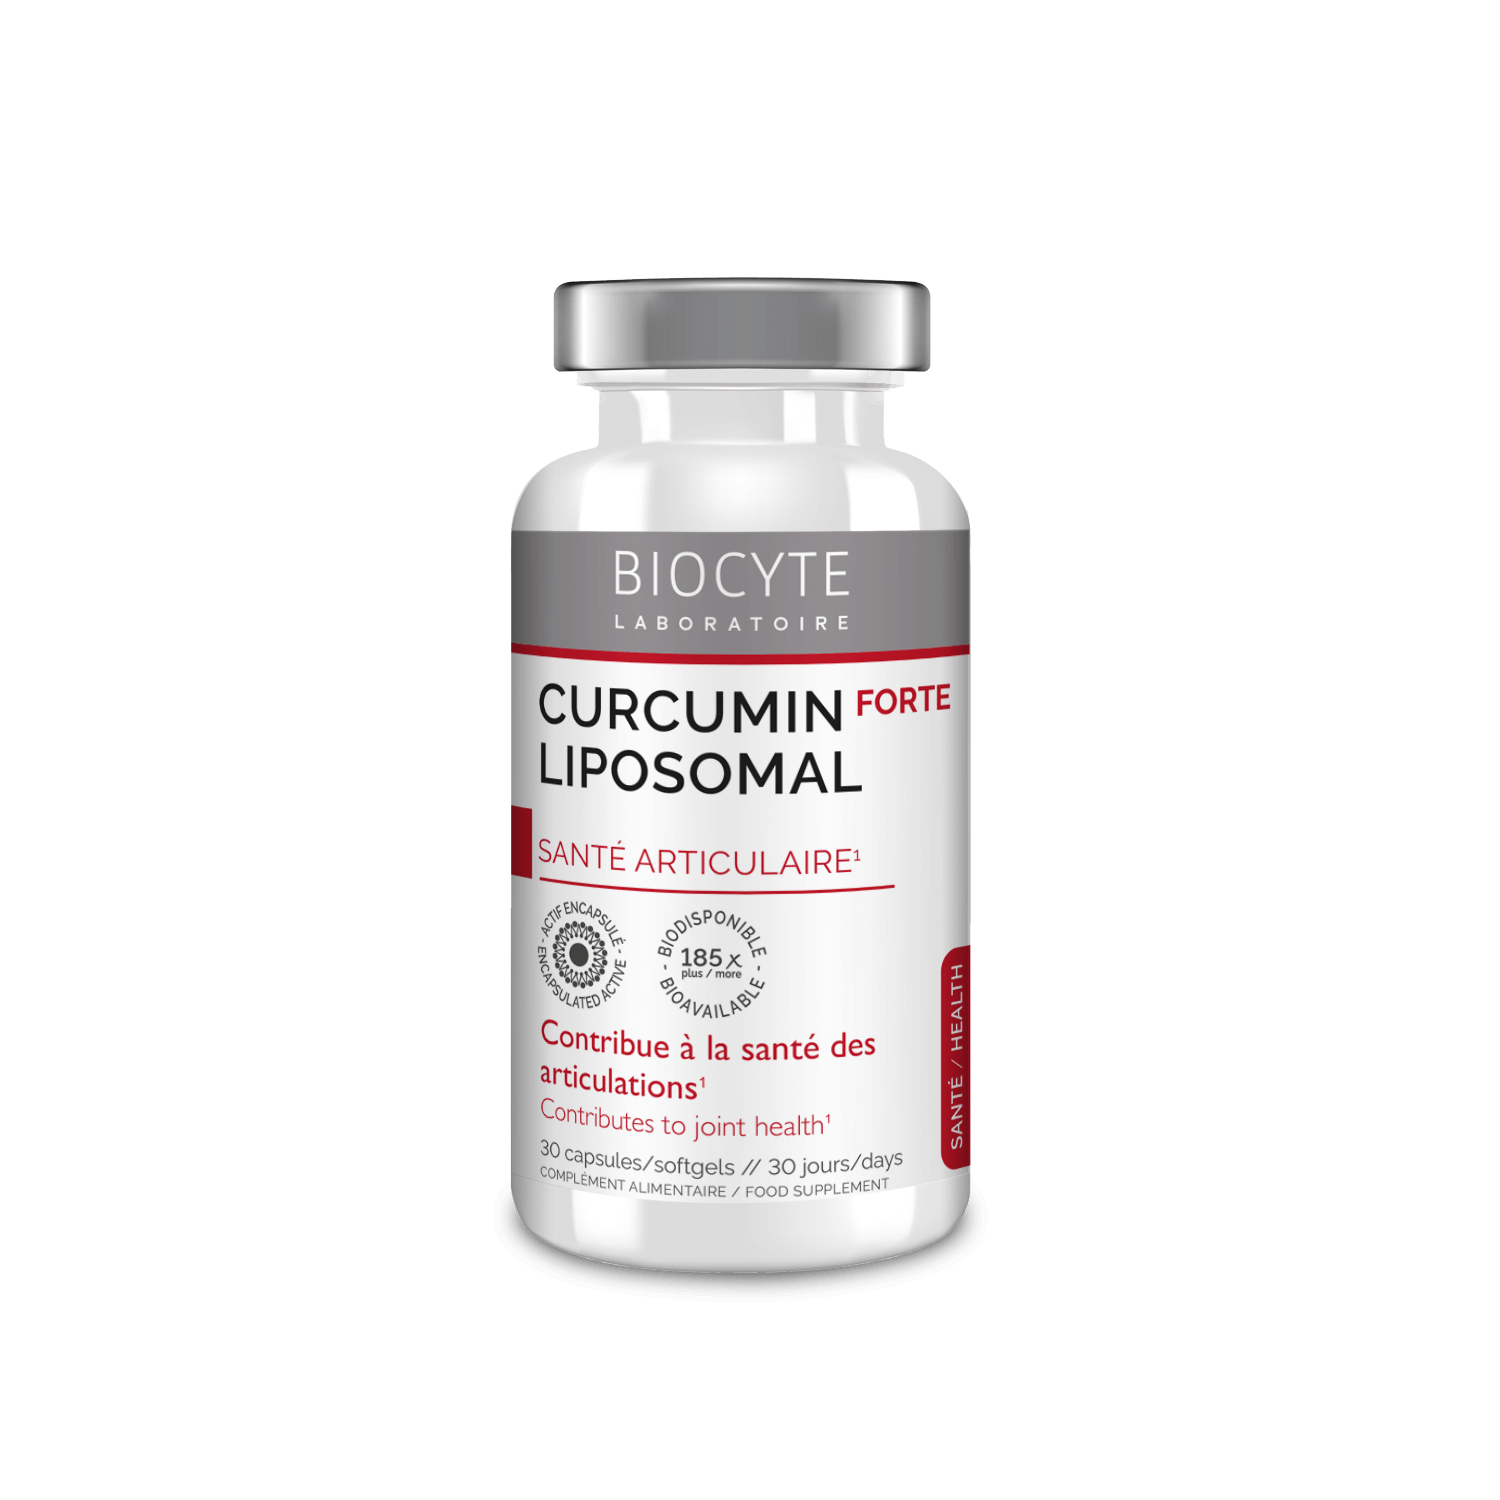 Biocyte Curcumin X 185 30 капсул: В корзину LONCU01.6020416 - цена косметологаCURCUMIN X 185